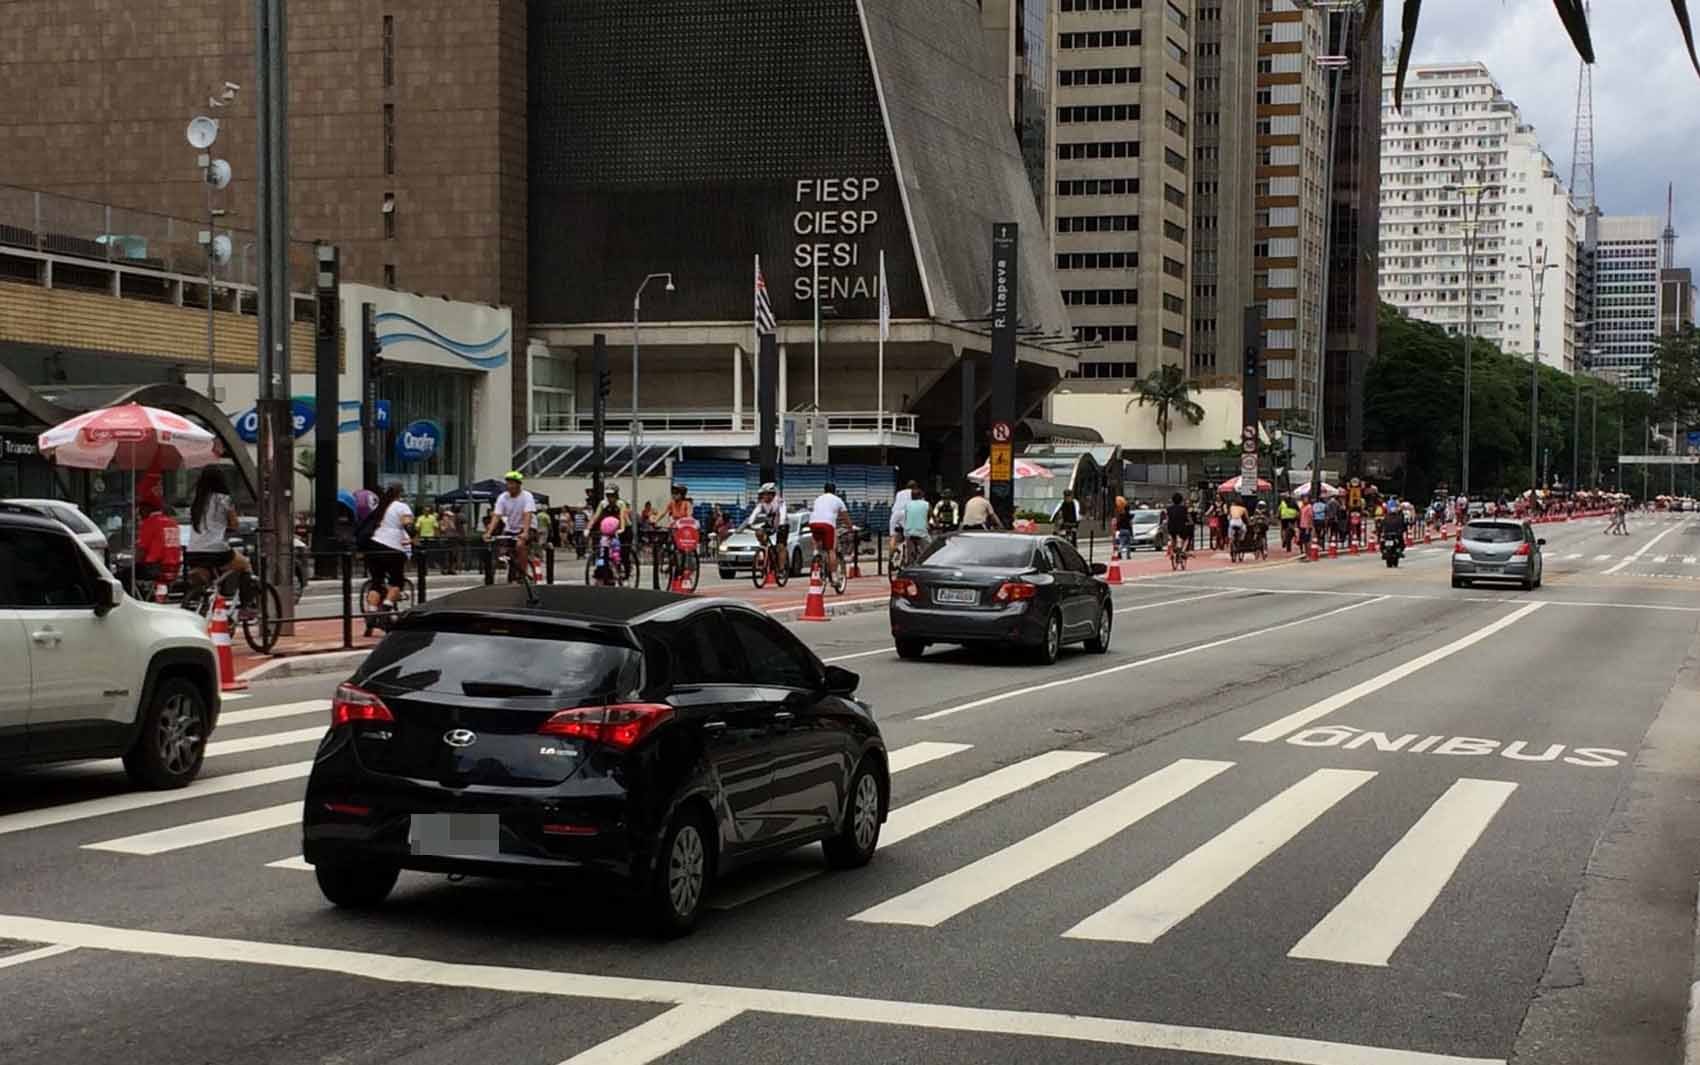 Prefeitura suspende programa Ruas Abertas na Avenida Paulista pela 2ª semana seguida e recebe críticas de urbanistas e comerciantes